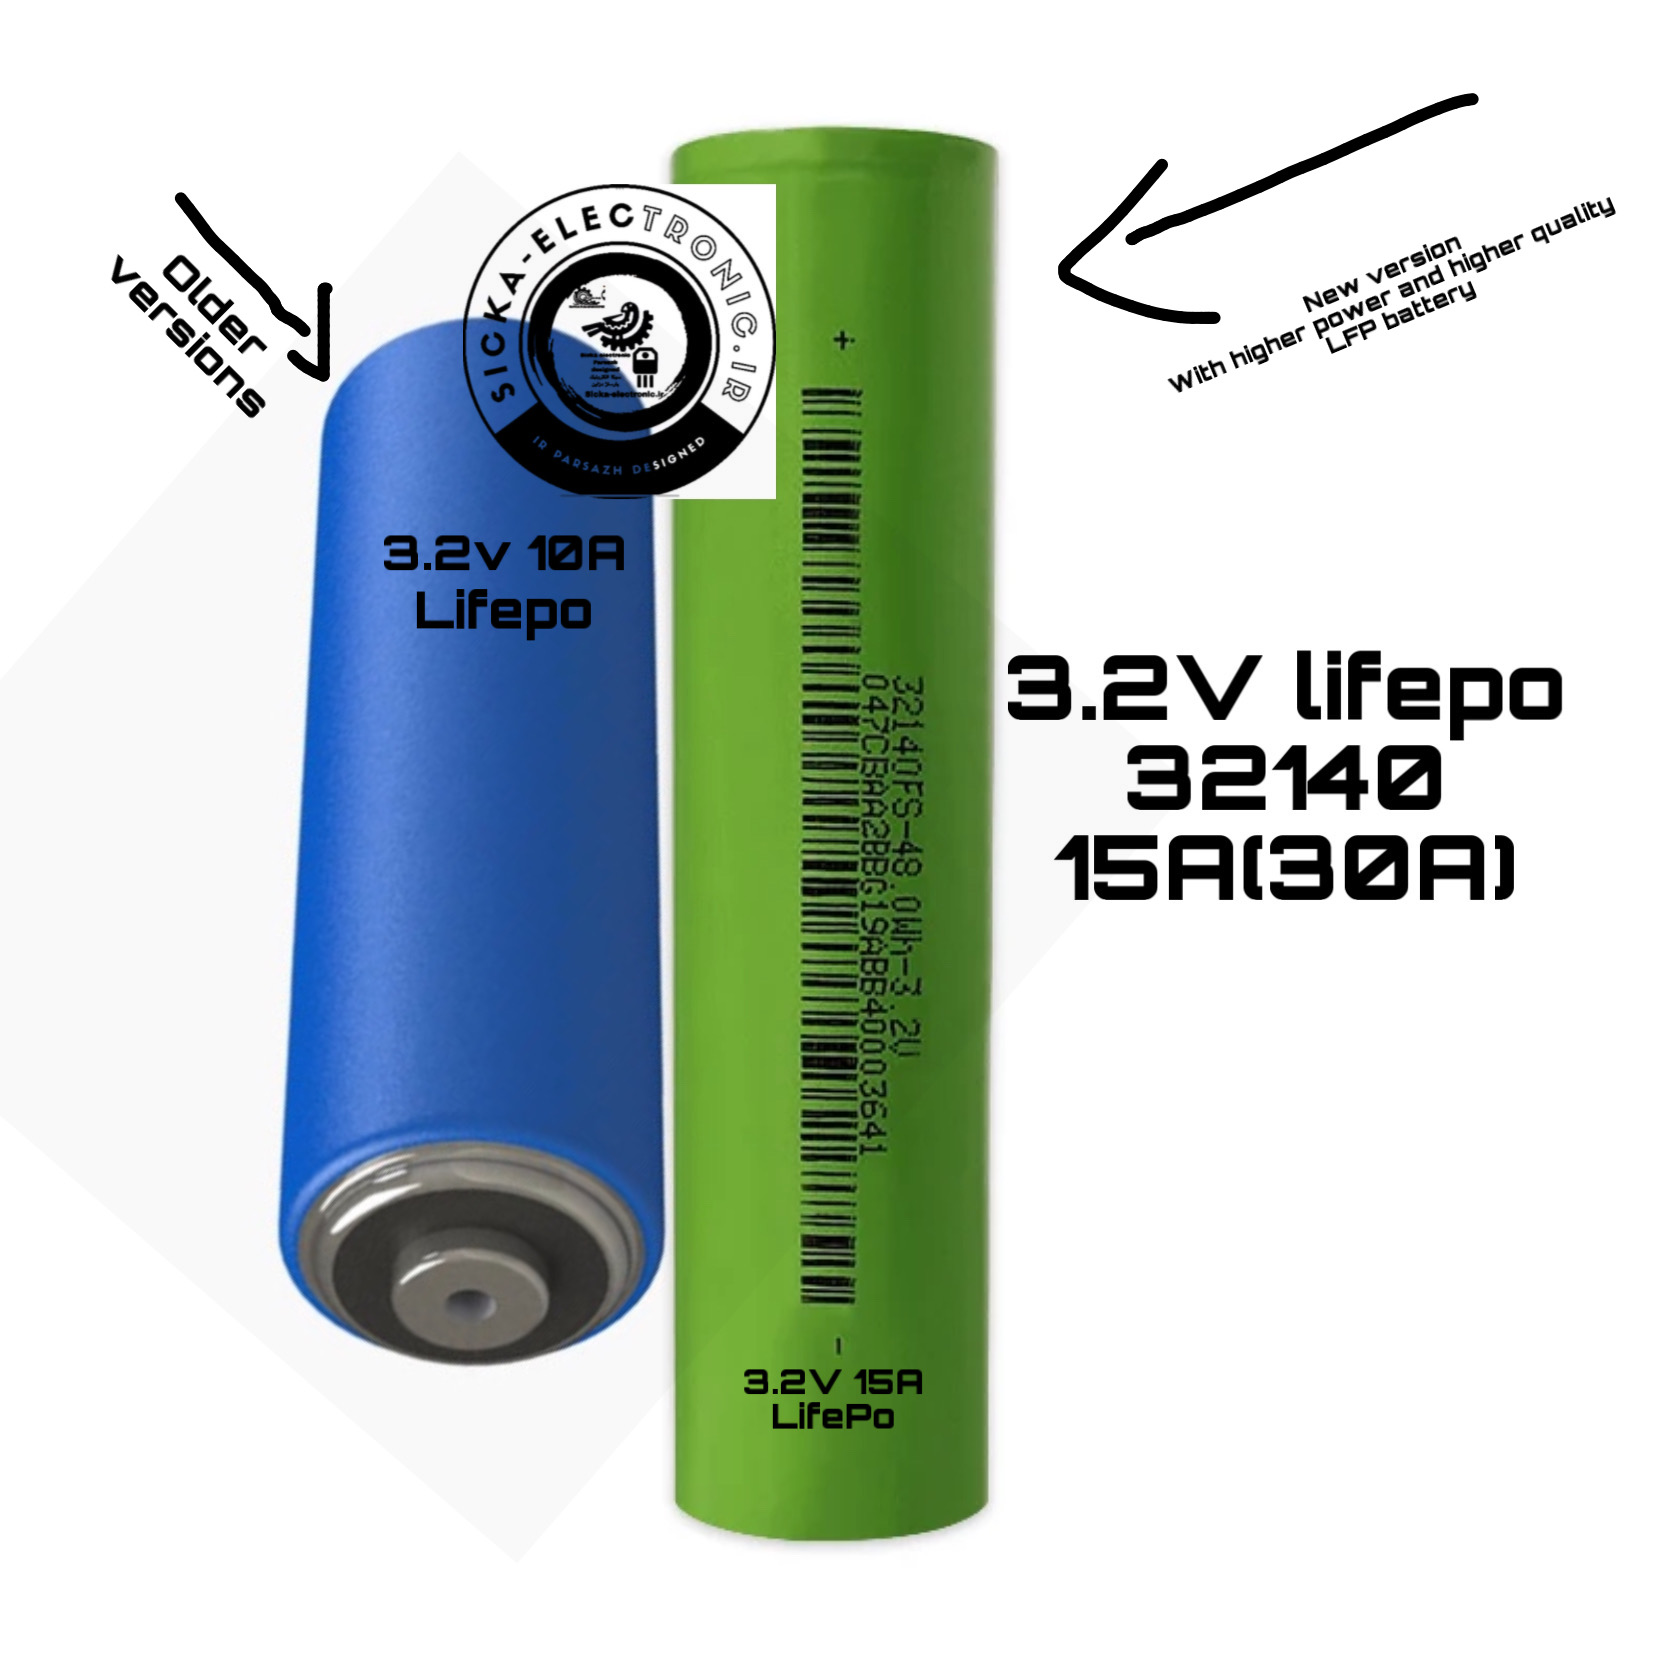 باتری لیتیوم آهن فسفات LiFePo4 )LFP) کپسولی ۱۵ آمپر(۳۰آمپر)با سایز ۳۲۱۴۰ /کیفیت و طول عمر و چگالی انرژی بالا  /قابلیت سفارشی سازی پکیج باتری /قیمت به ازای یک سلول میباشد